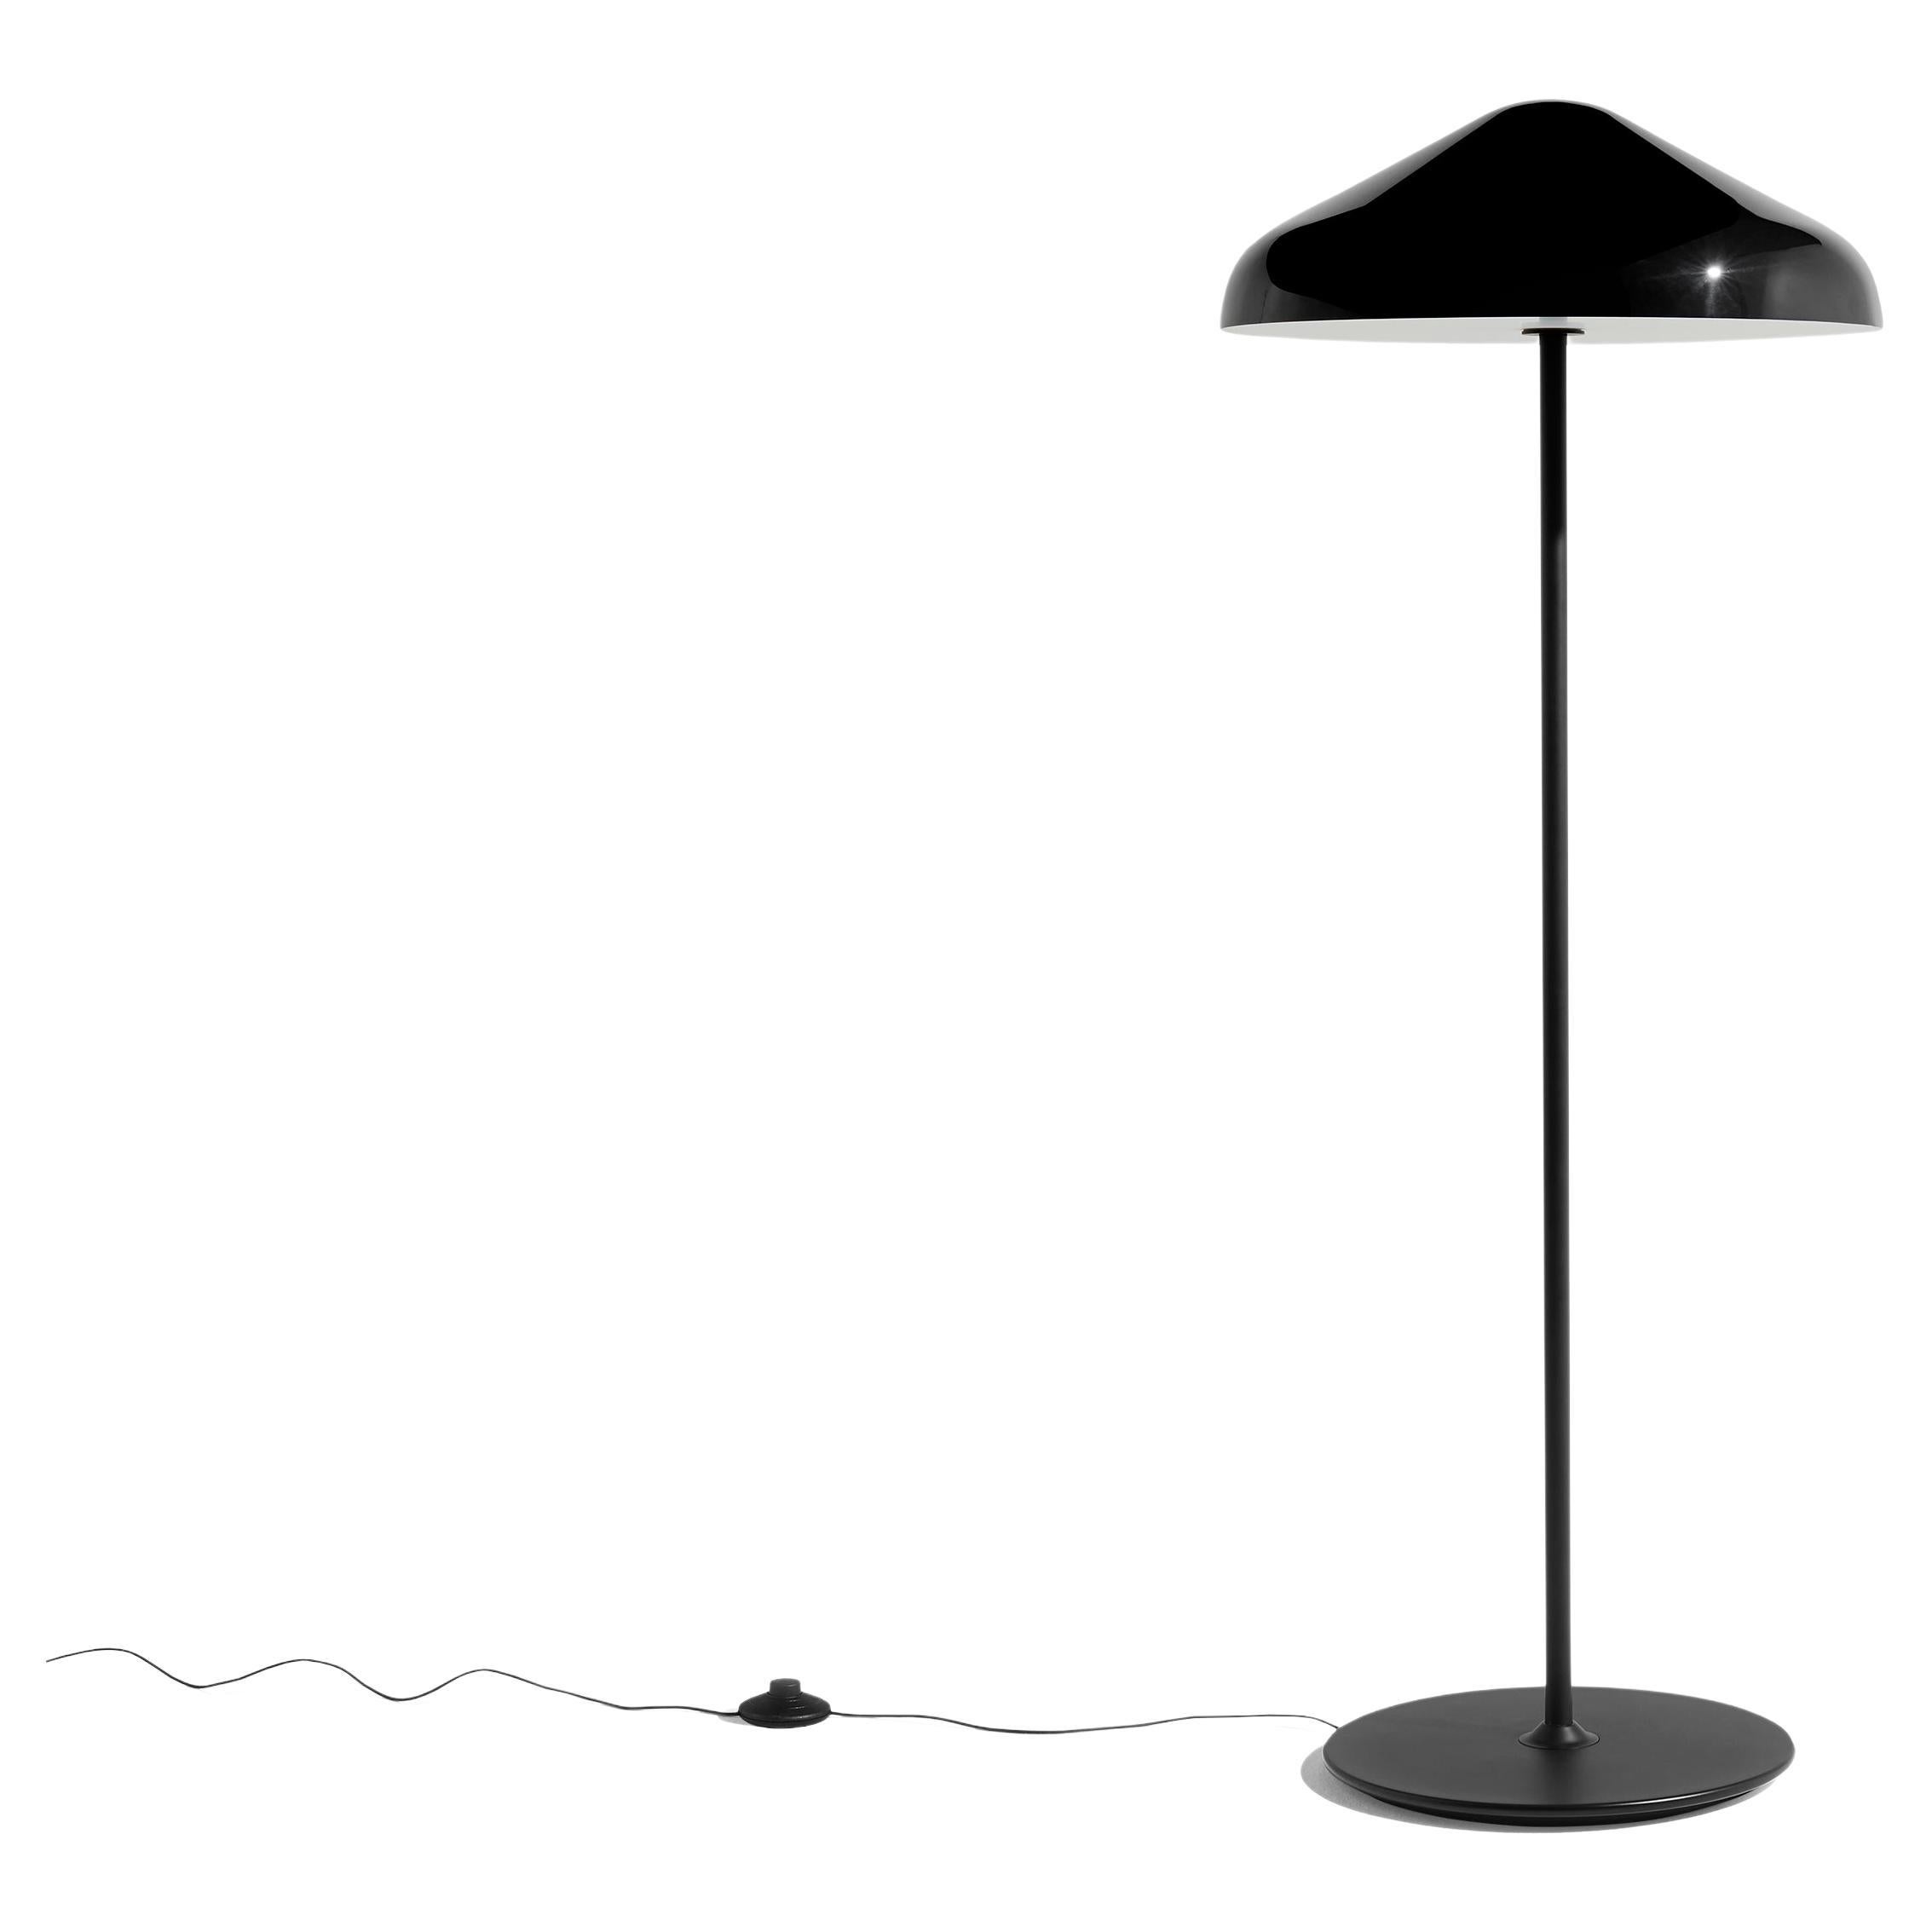 Stehlampe Pao aus Stahl, weiches Schwarz, von Naoto Fukasawa, für Hay